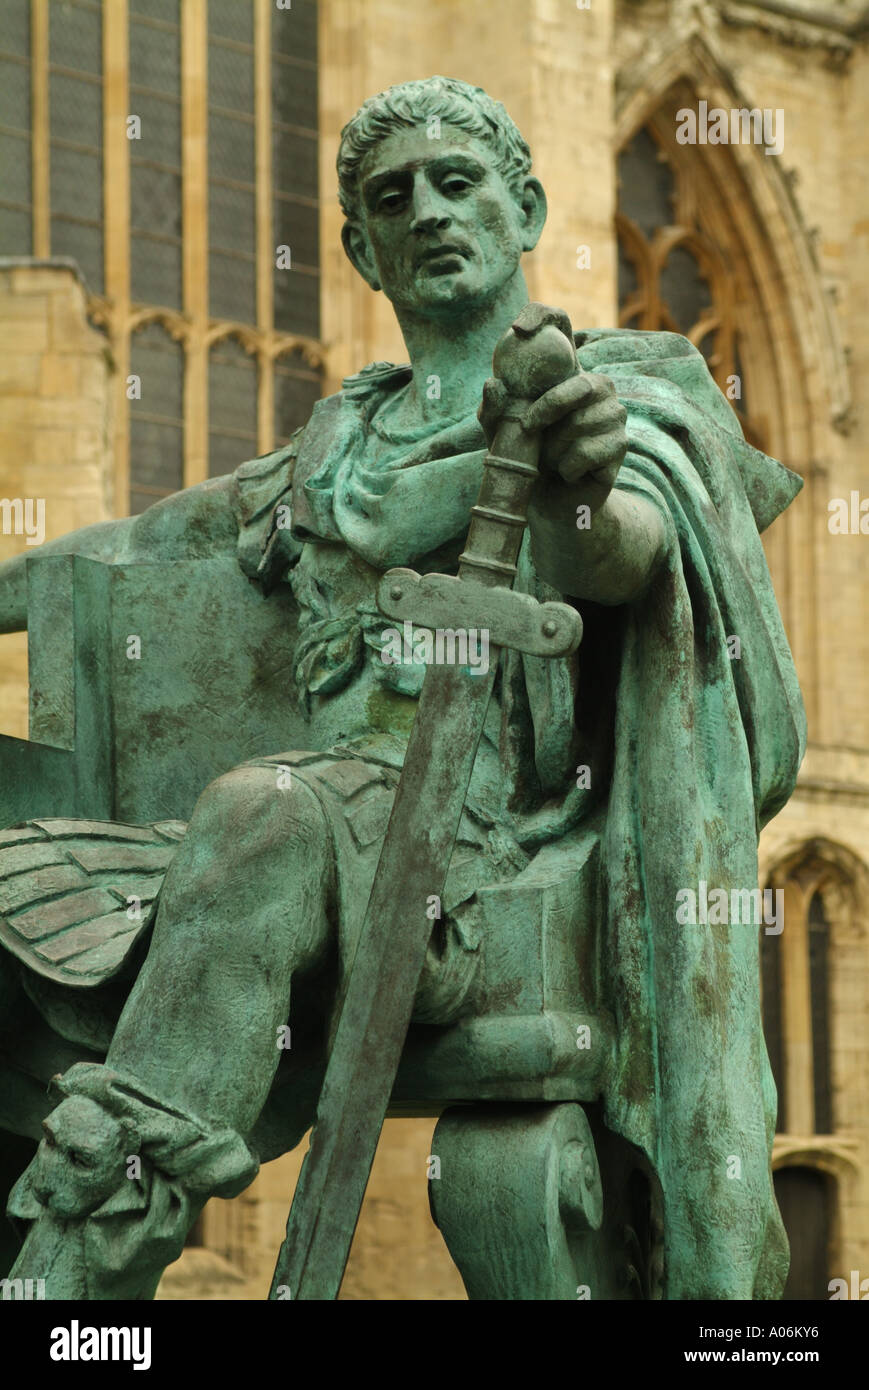 Estatua de bronce del emperador romano Constantino el Grande fuera de la Catedral de York Minster, Patio, York, Inglaterra, Reino Unido. Foto de stock